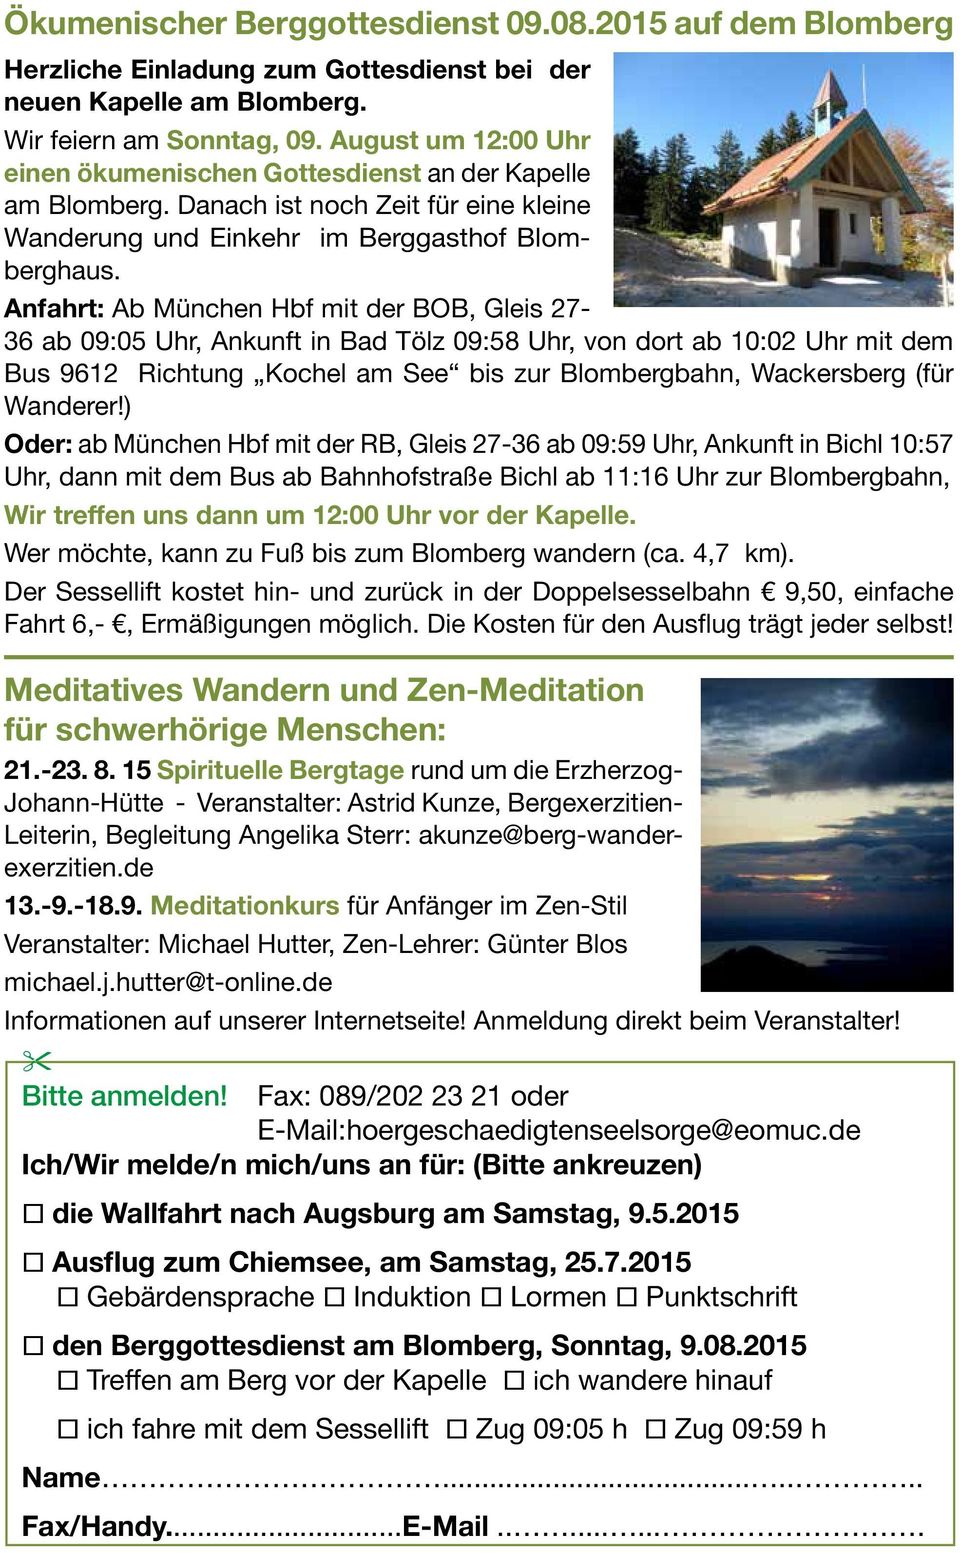 Anfahrt: Ab München Hbf mit der BOB, Gleis 27-36 ab 09:05 Uhr, Ankunft in Bad Tölz 09:58 Uhr, von dort ab 10:02 Uhr mit dem Bus 9612 Richtung Kochel am See bis zur Blombergbahn, Wackersberg (für